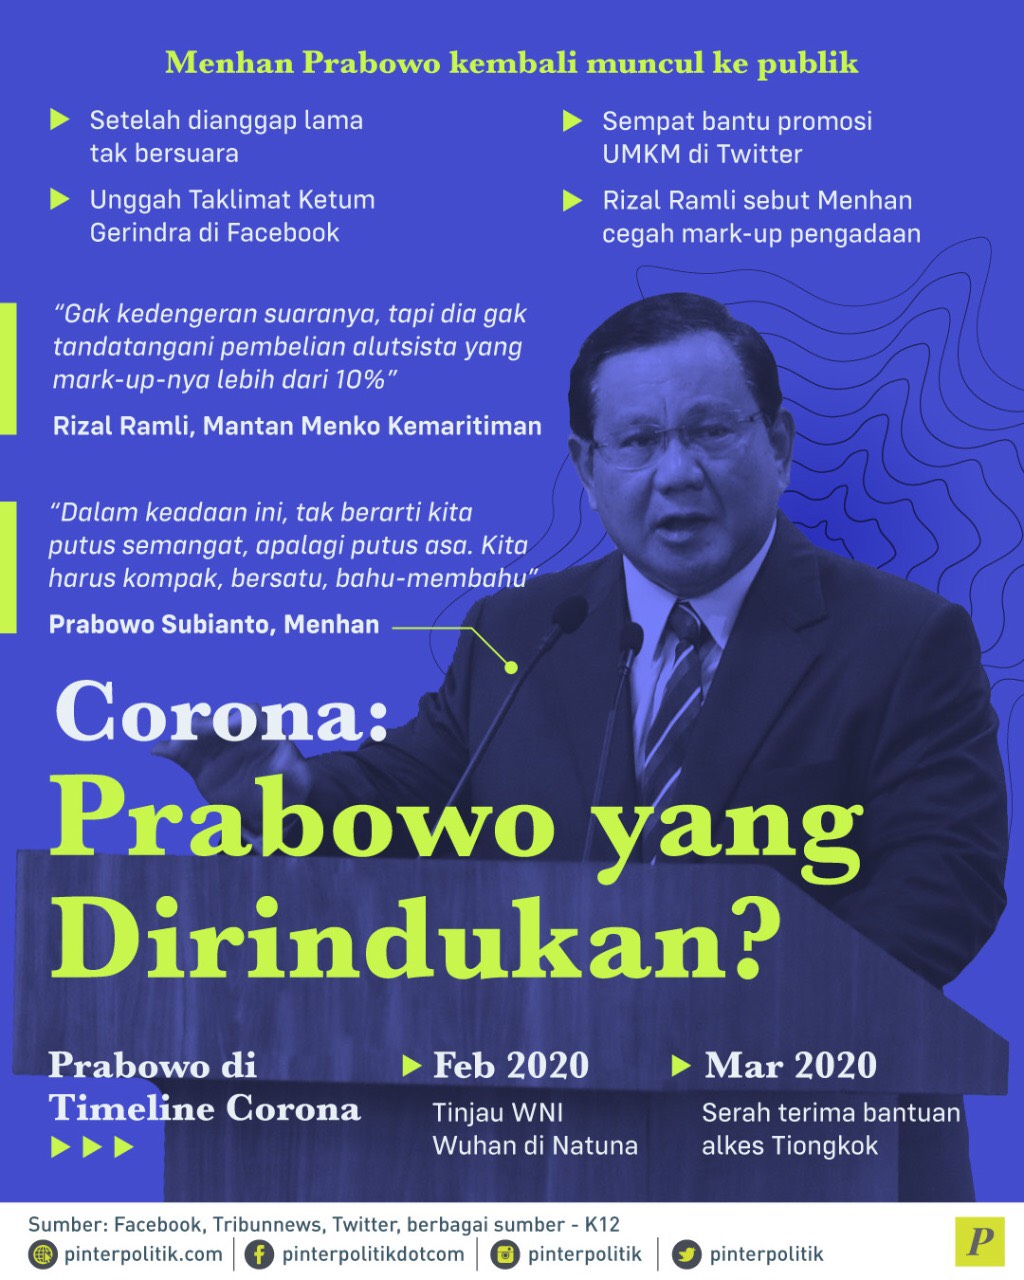 Menhan Prabowo bantu promosi UMKM